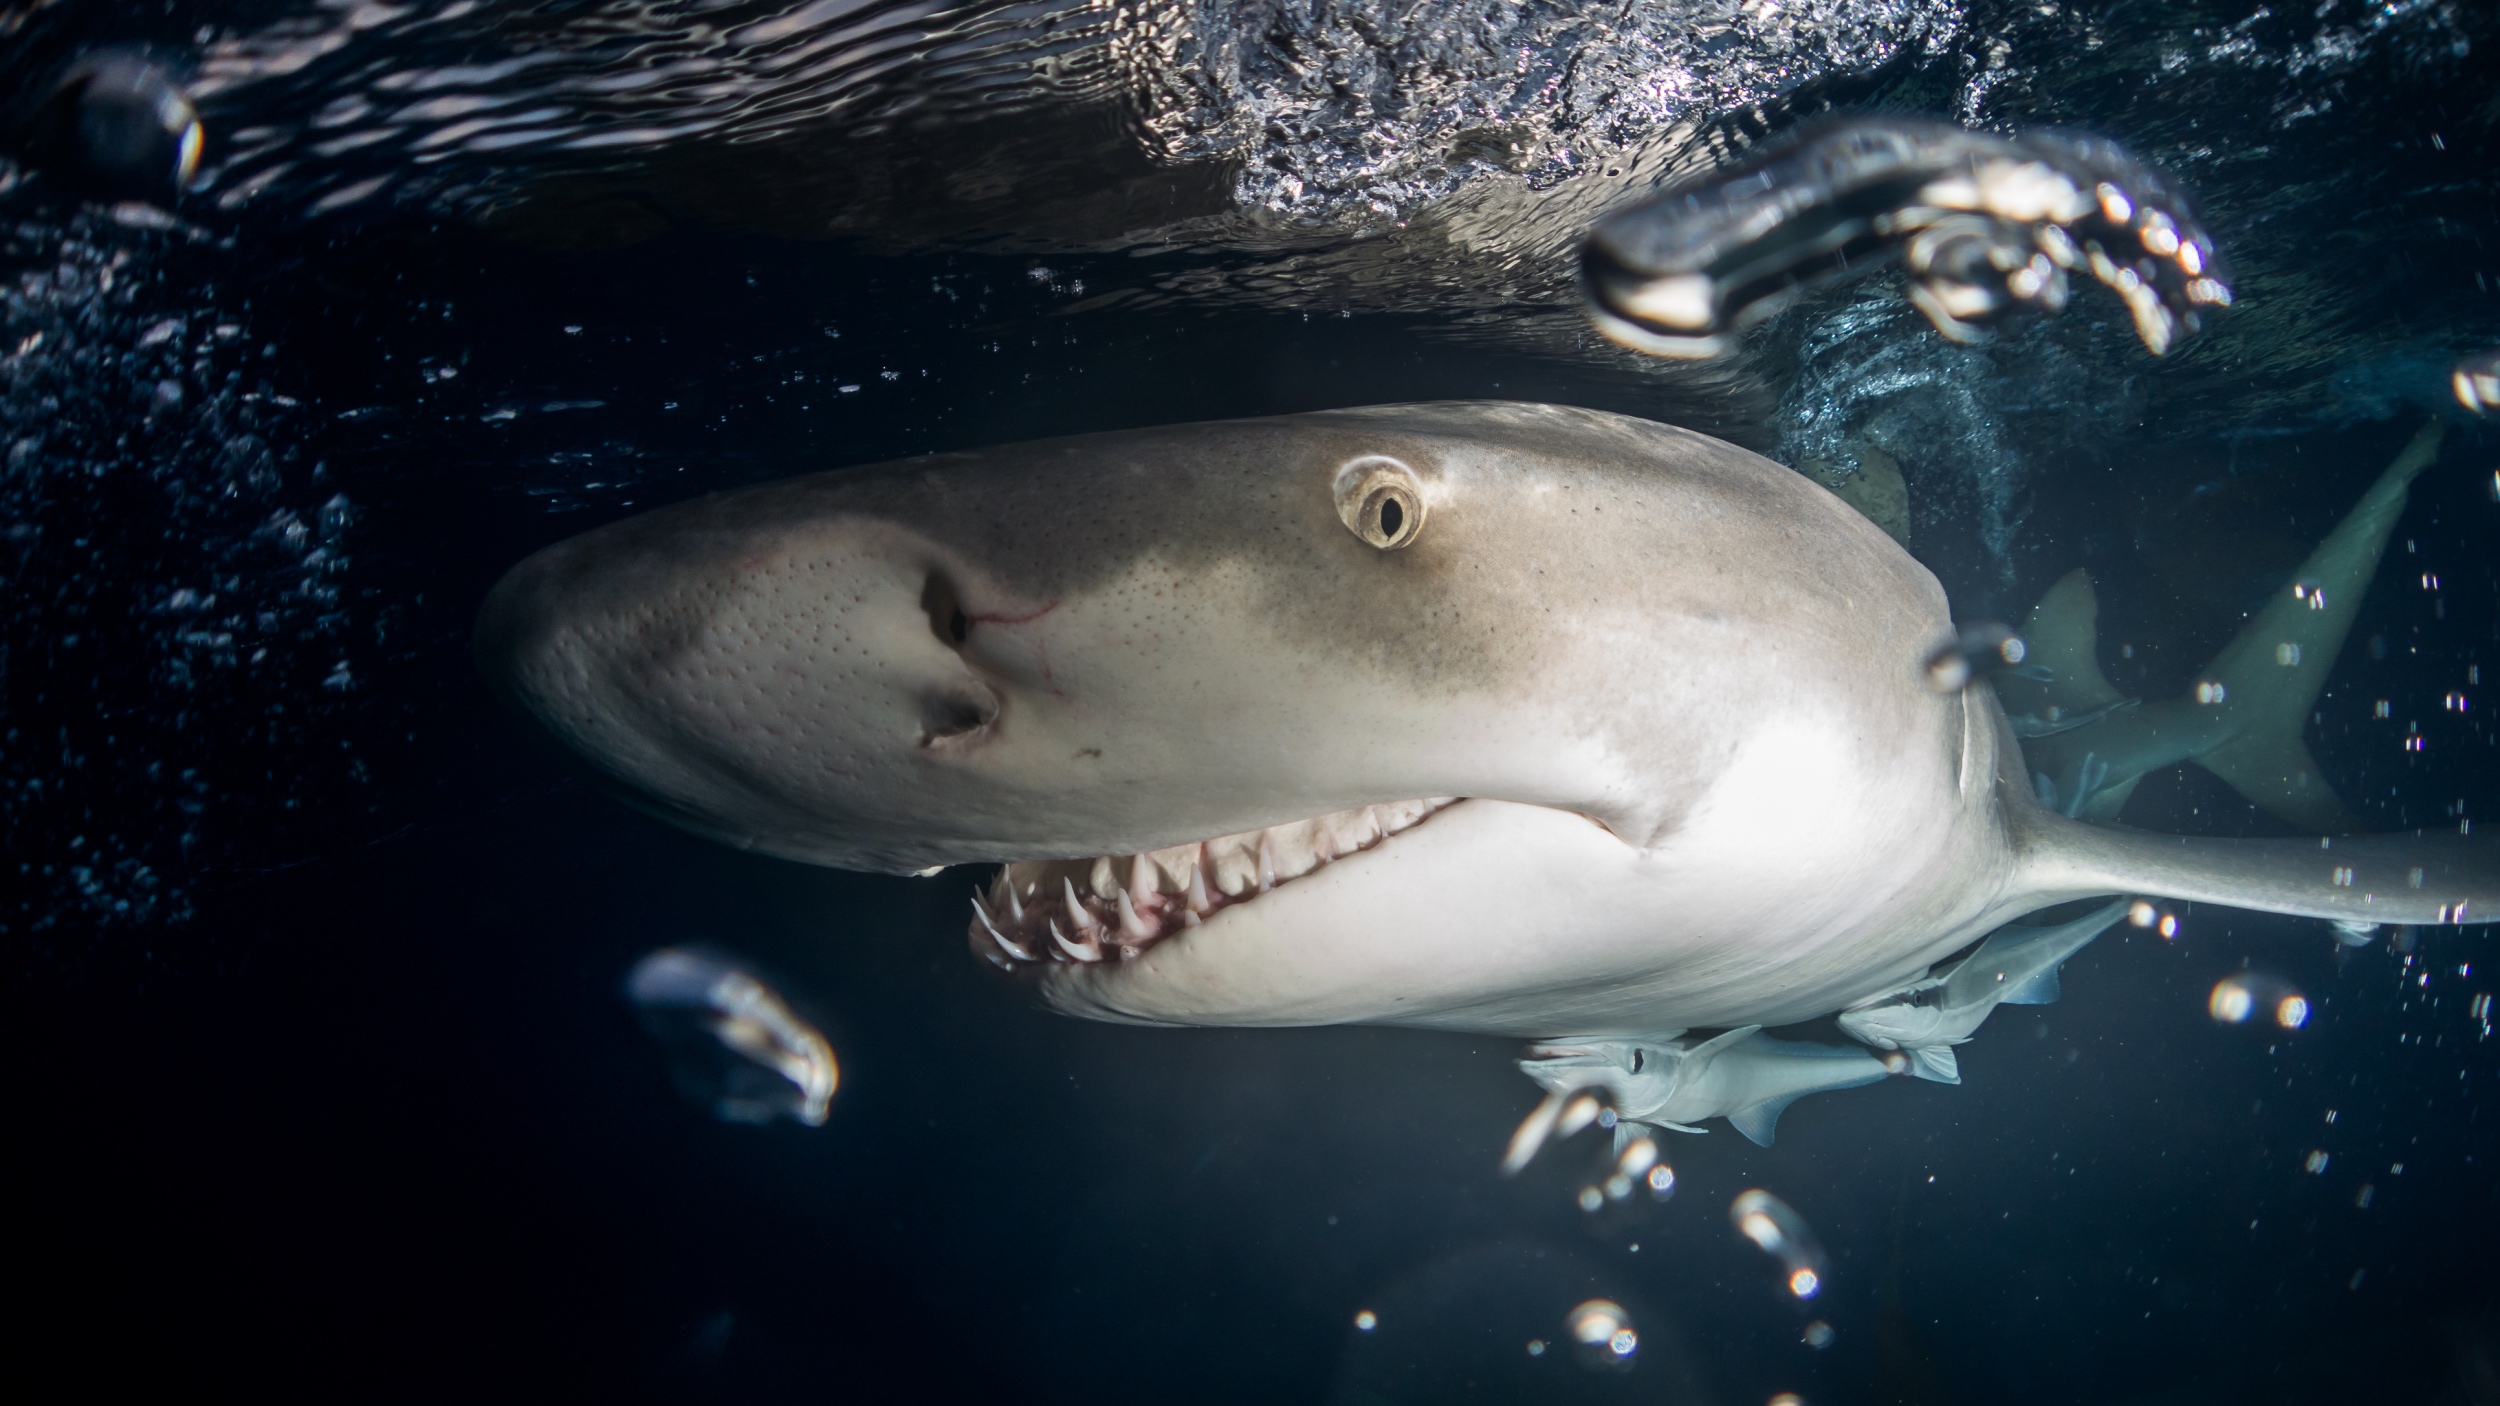 lemon shark attacks